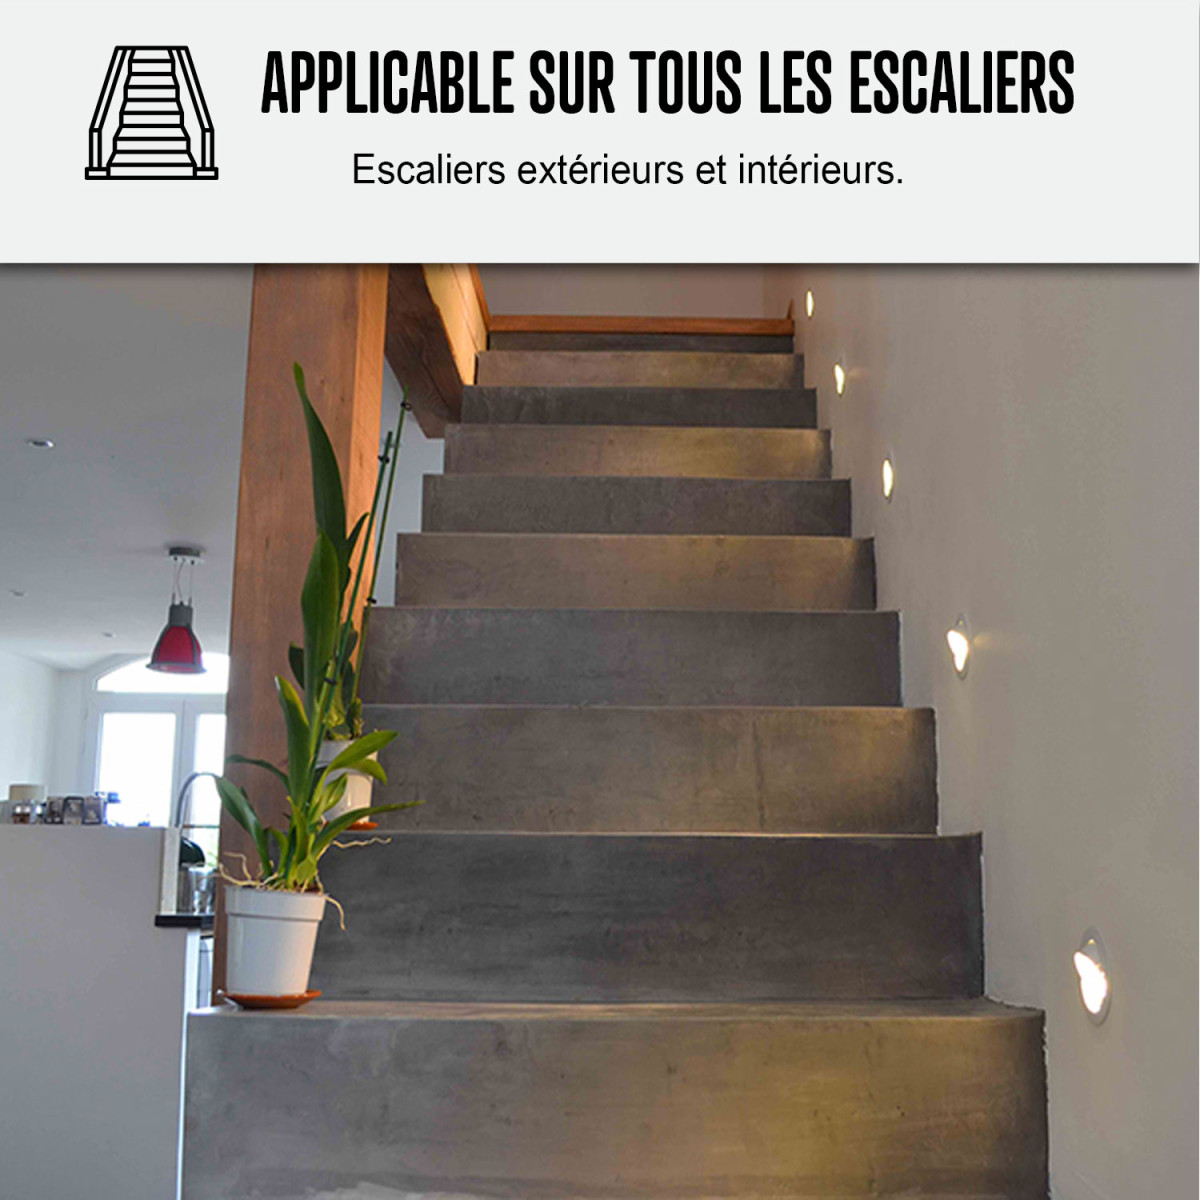 Sablage d'escalier : Infos, mise en œuvre et prix indicatif